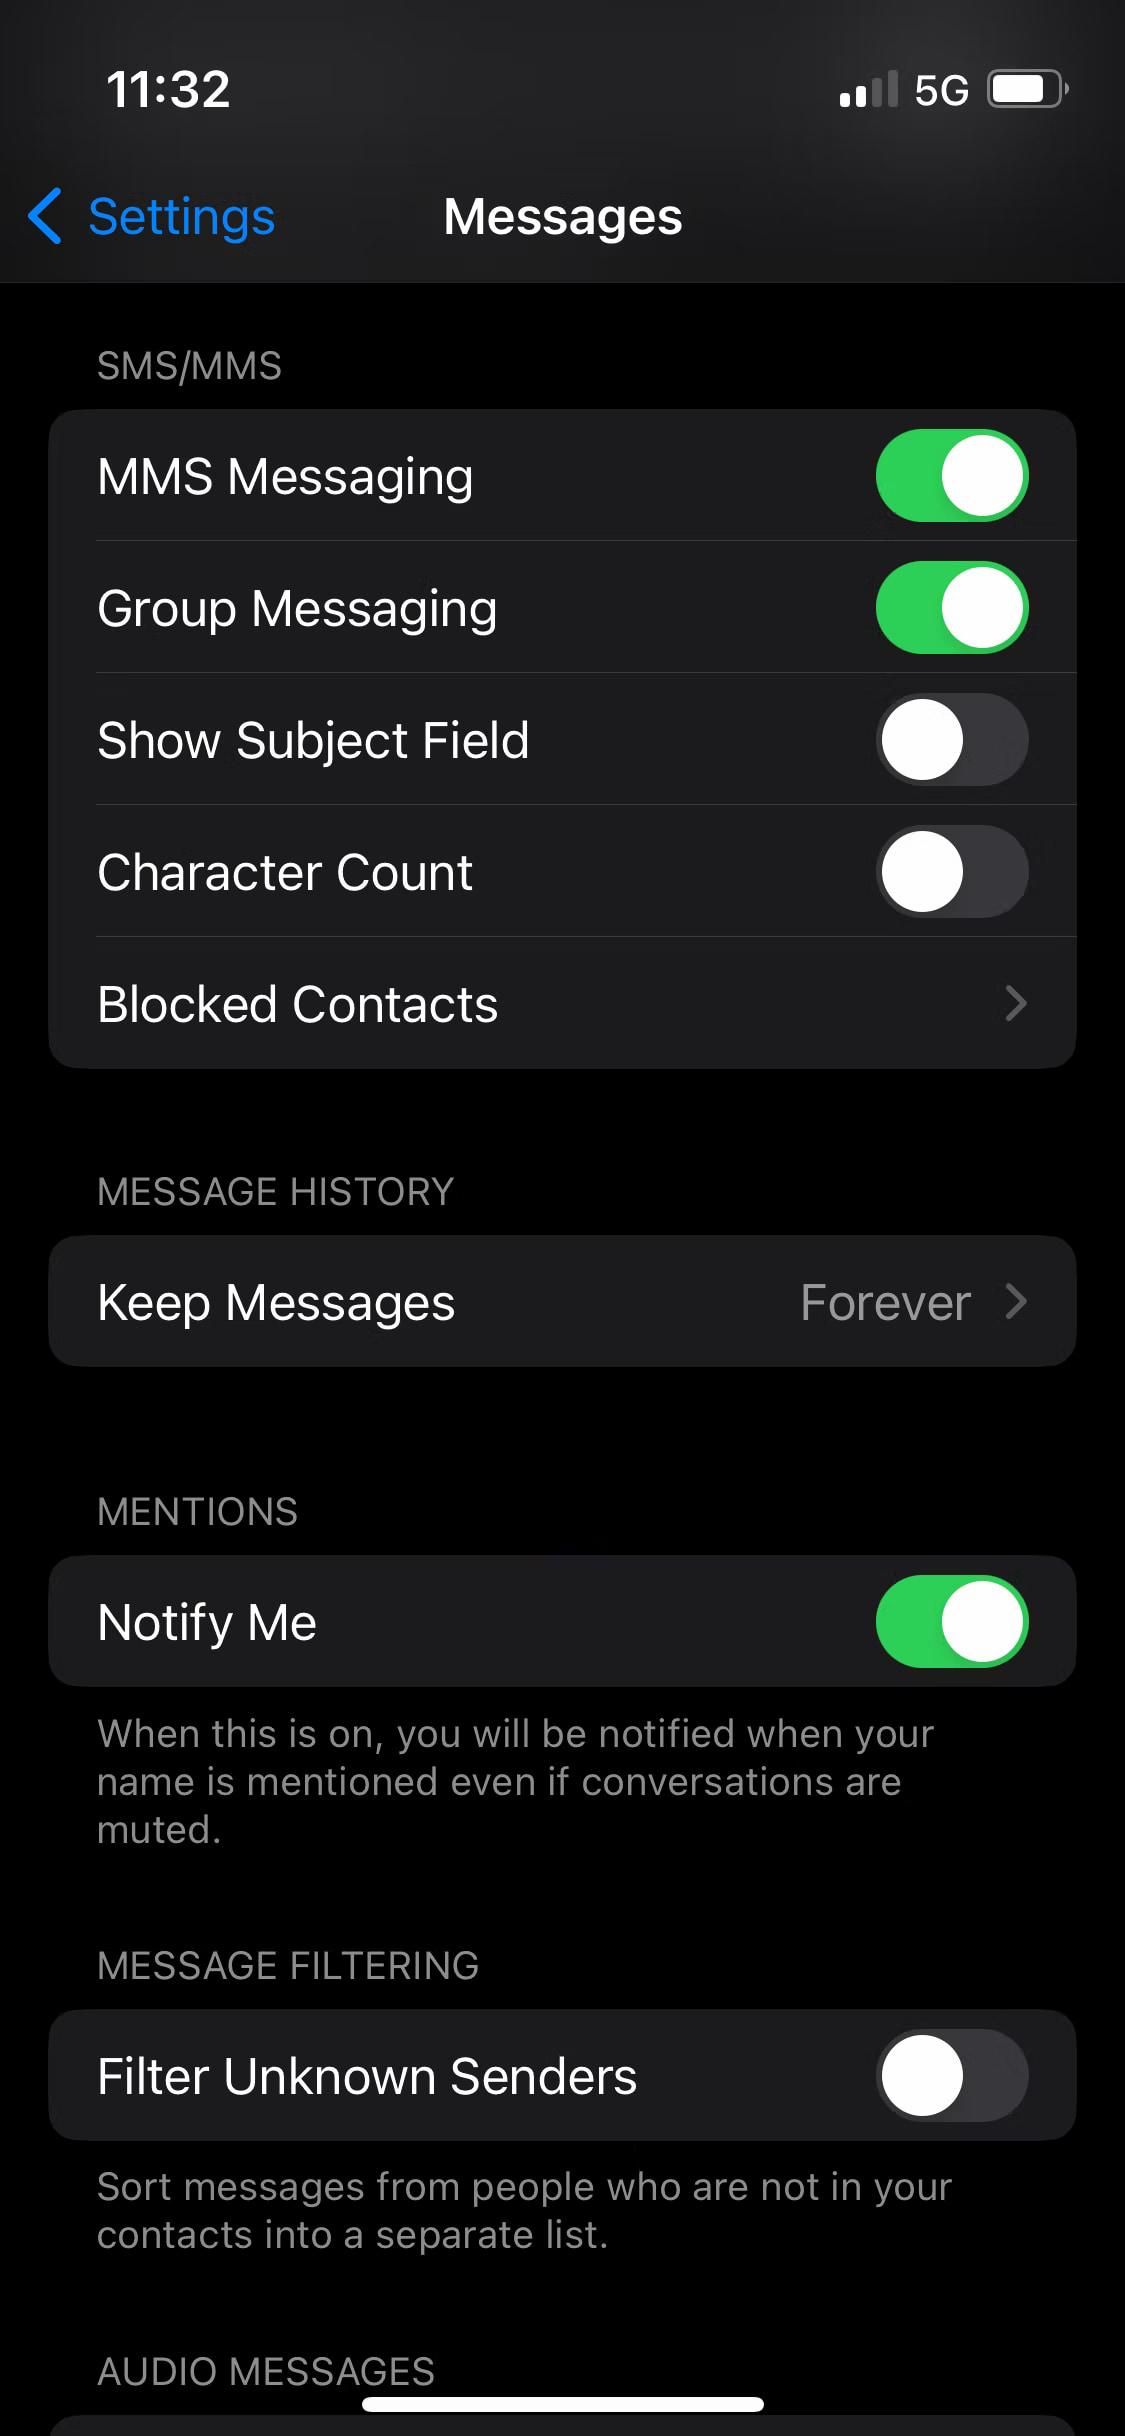 Tùy chọn xác định thời gian lưu trữ tin nhắn trên iPhone